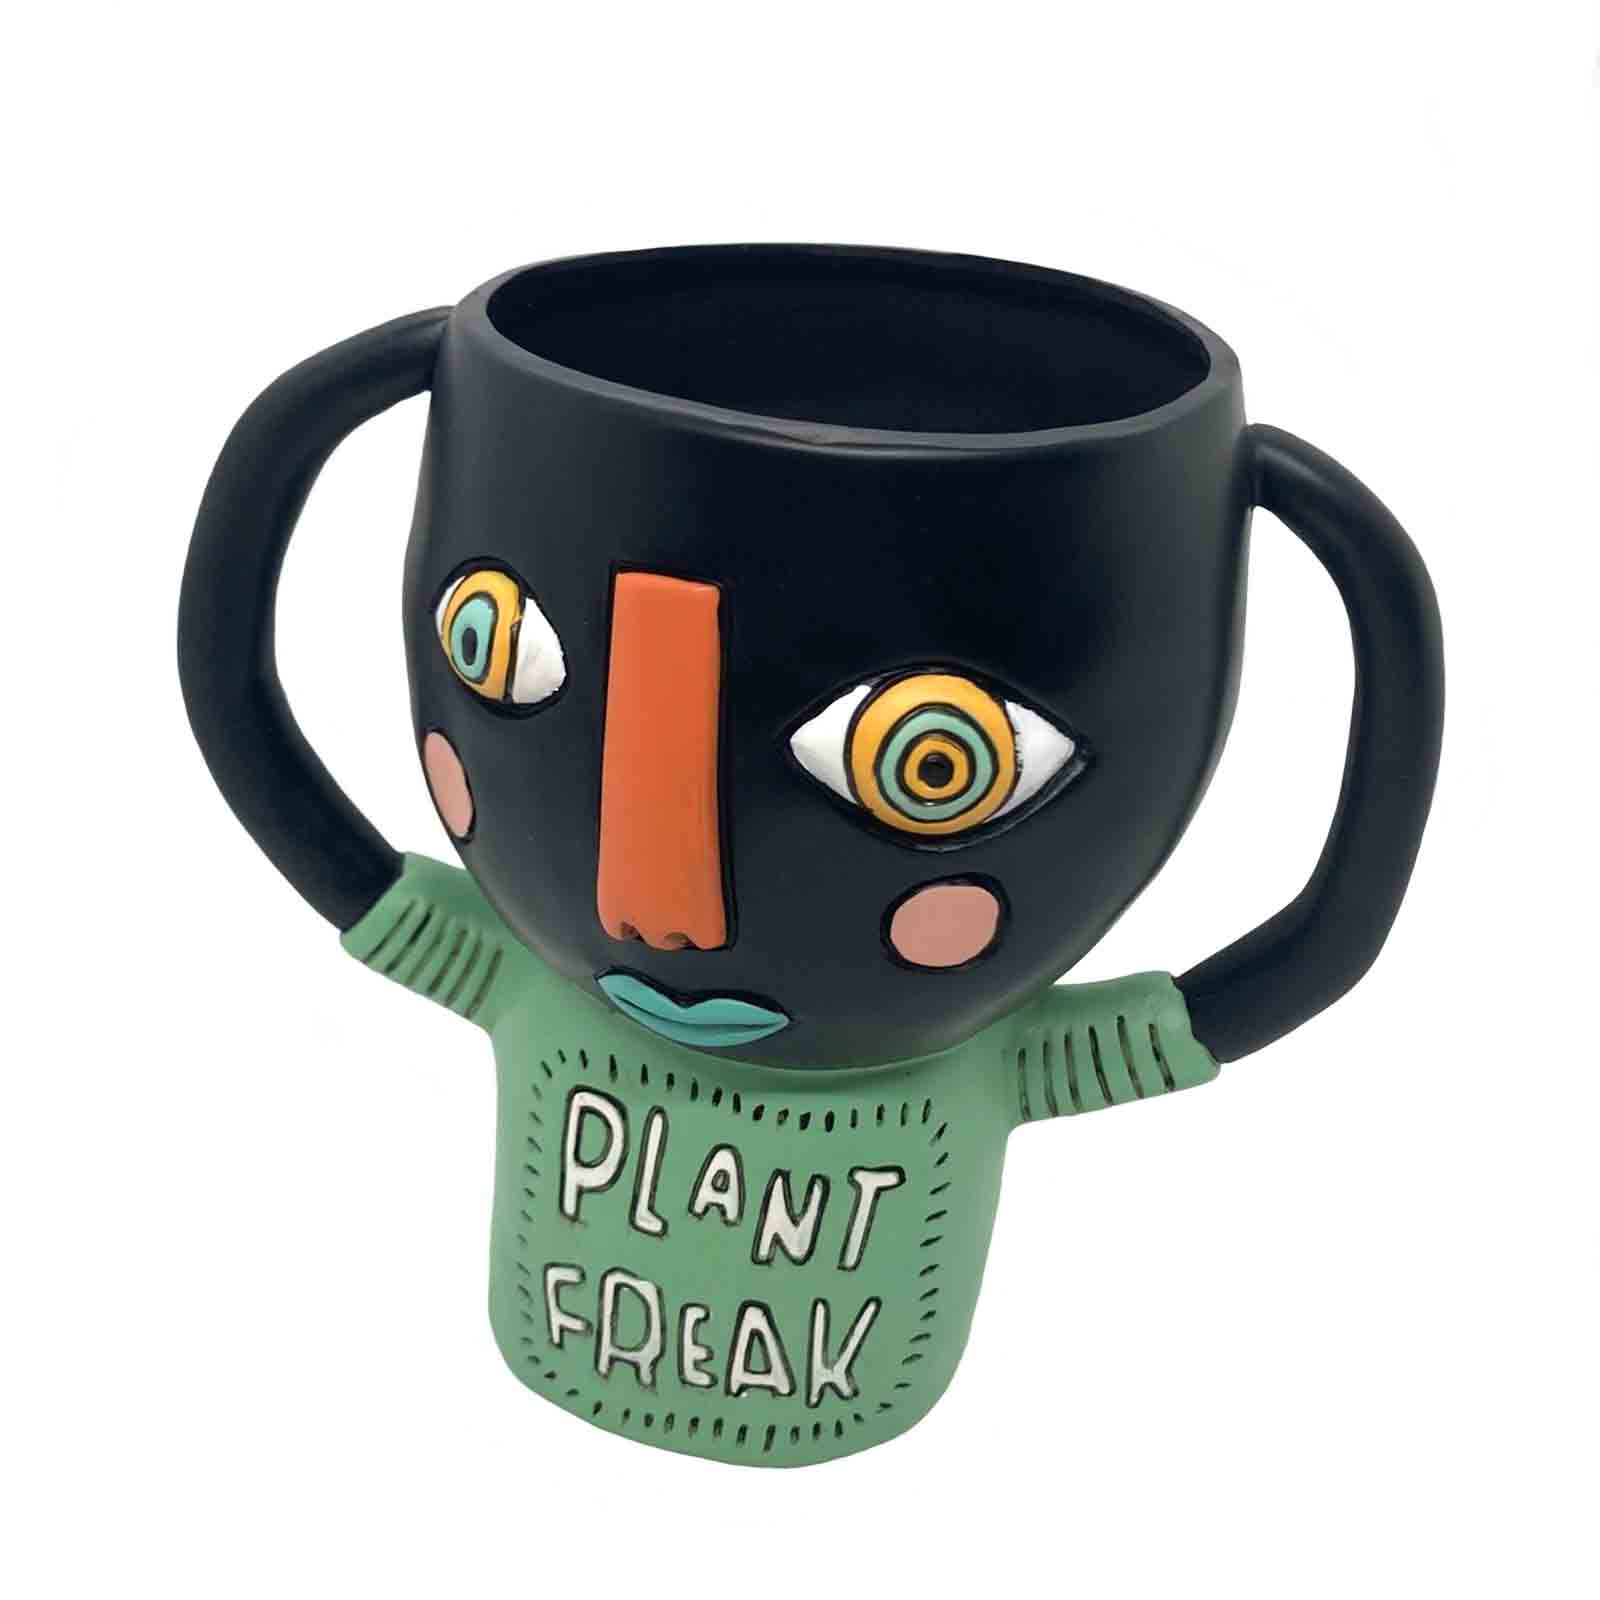 PLANT FREAK - Black - Indoor Pot Planter by Allen Designs